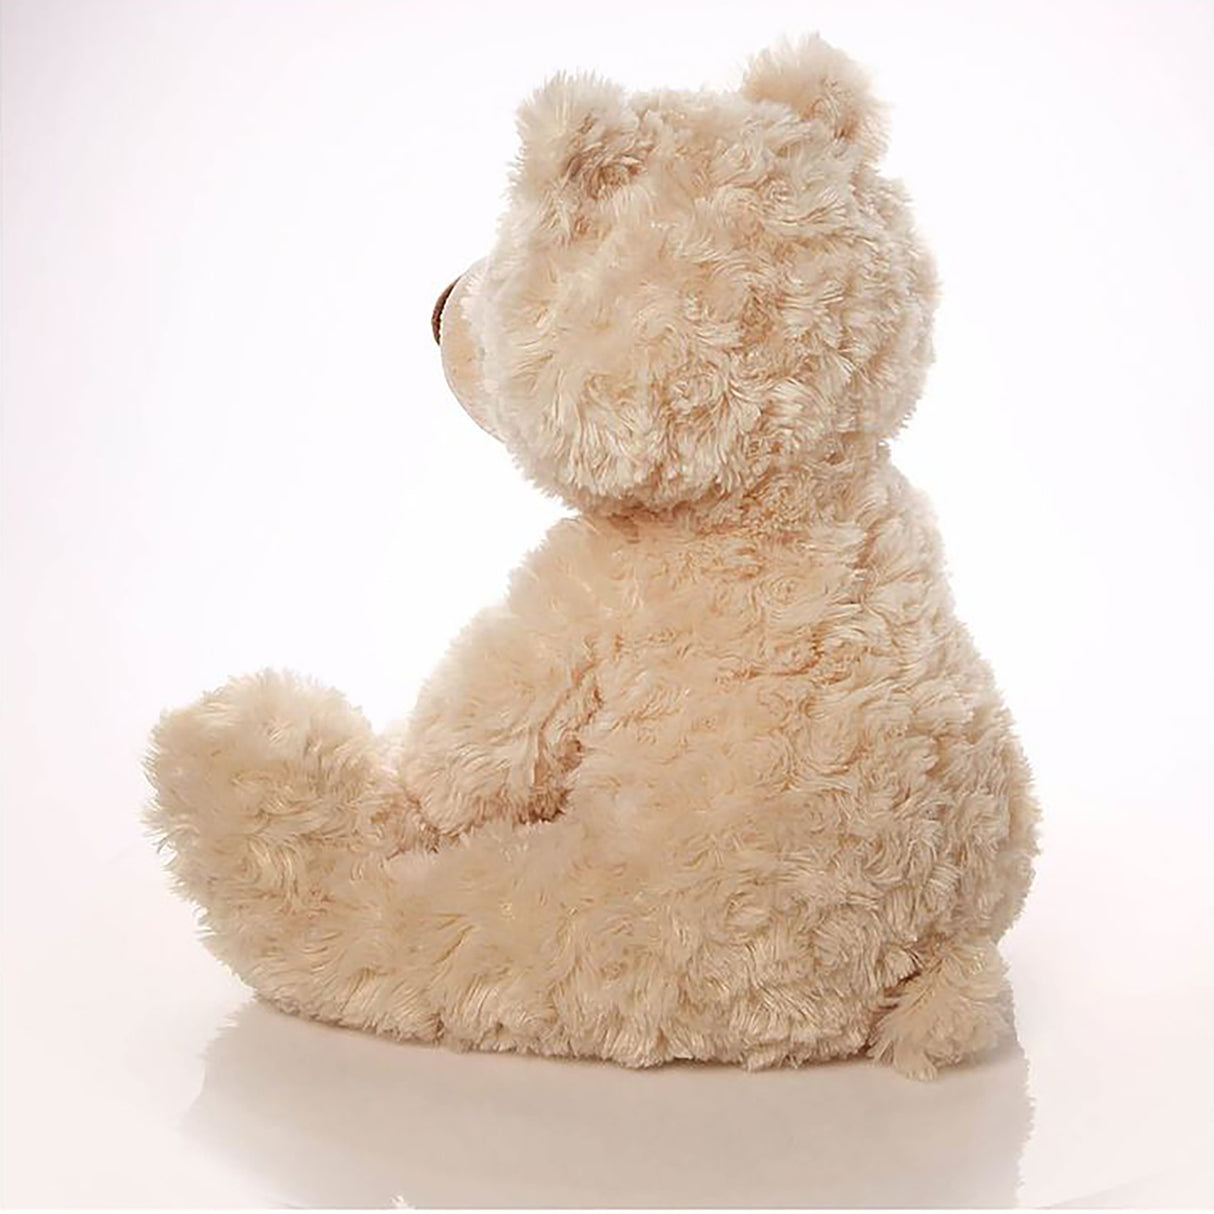 Gund Philbin Beige Bear Plush Toy (47 cms)